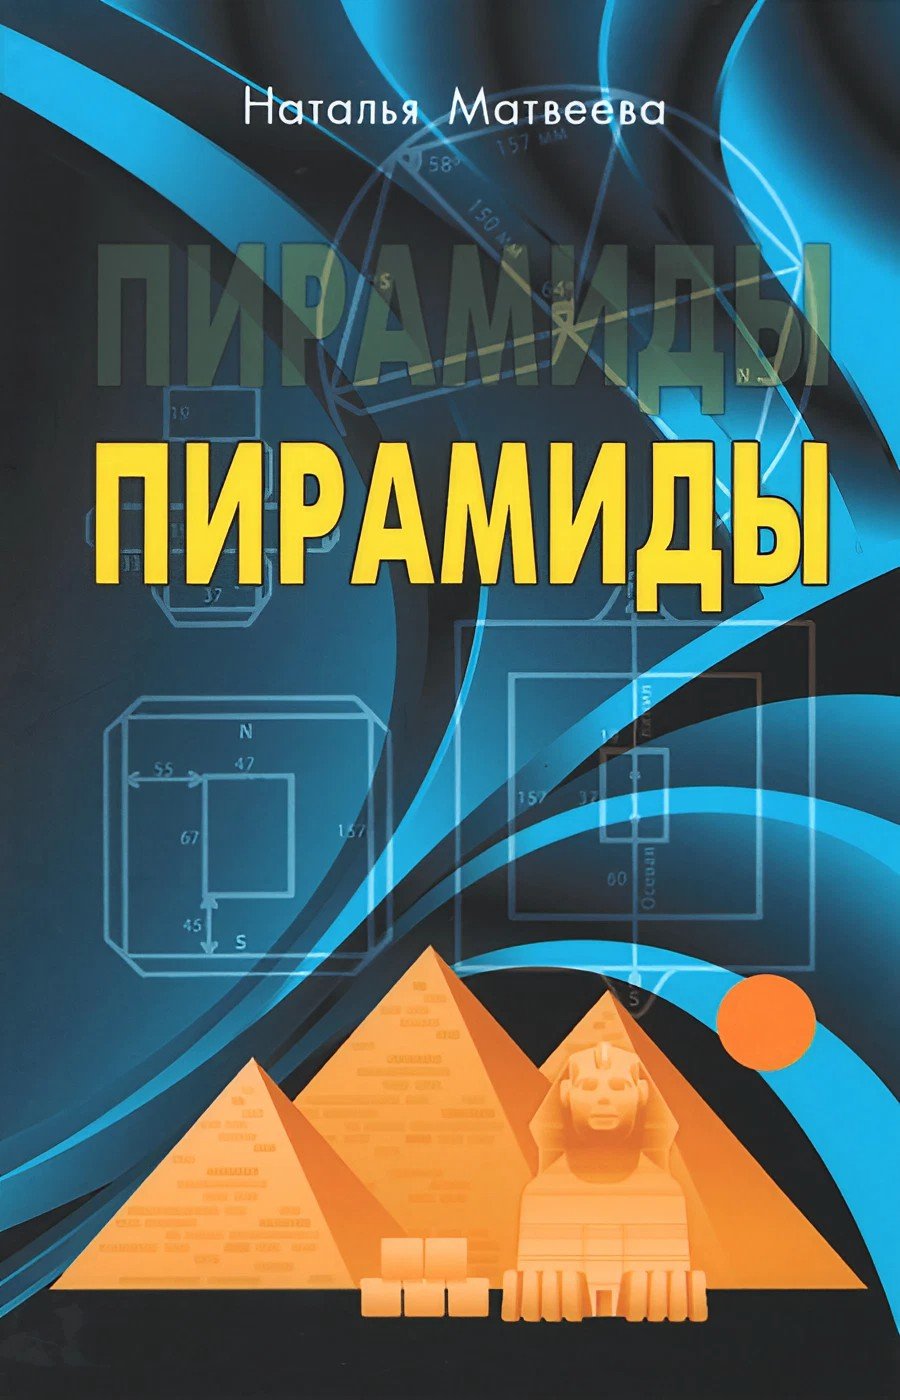 Купить книгу Пирамиды Матвеева Н. А. в интернет-магазине Ариаварта